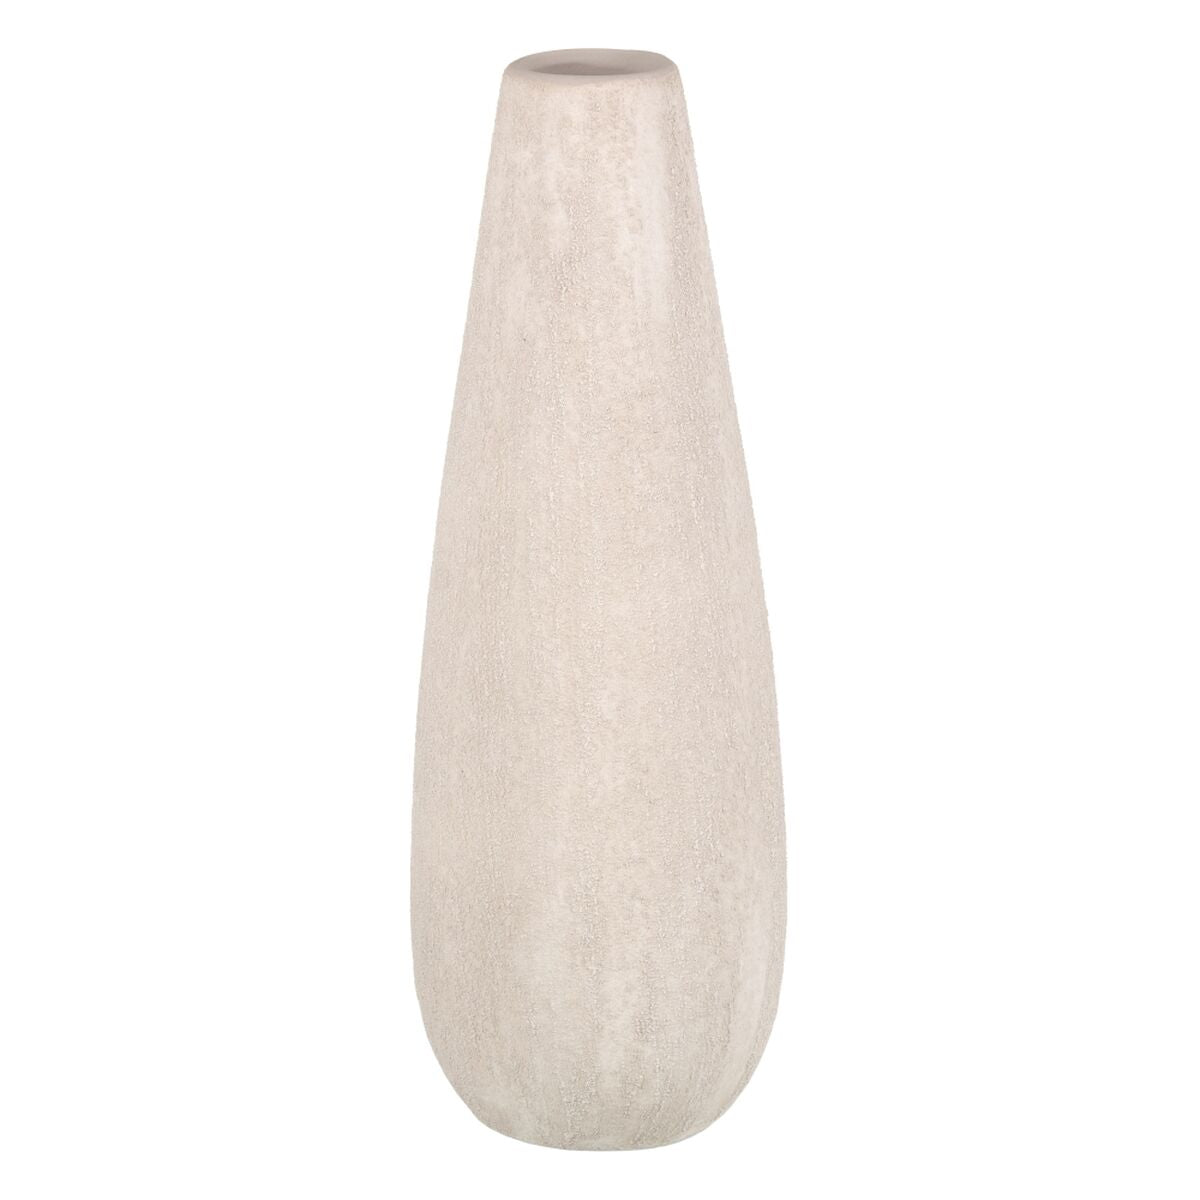 Vase 17 x 17 x 51,5 cm Ceramic Cream